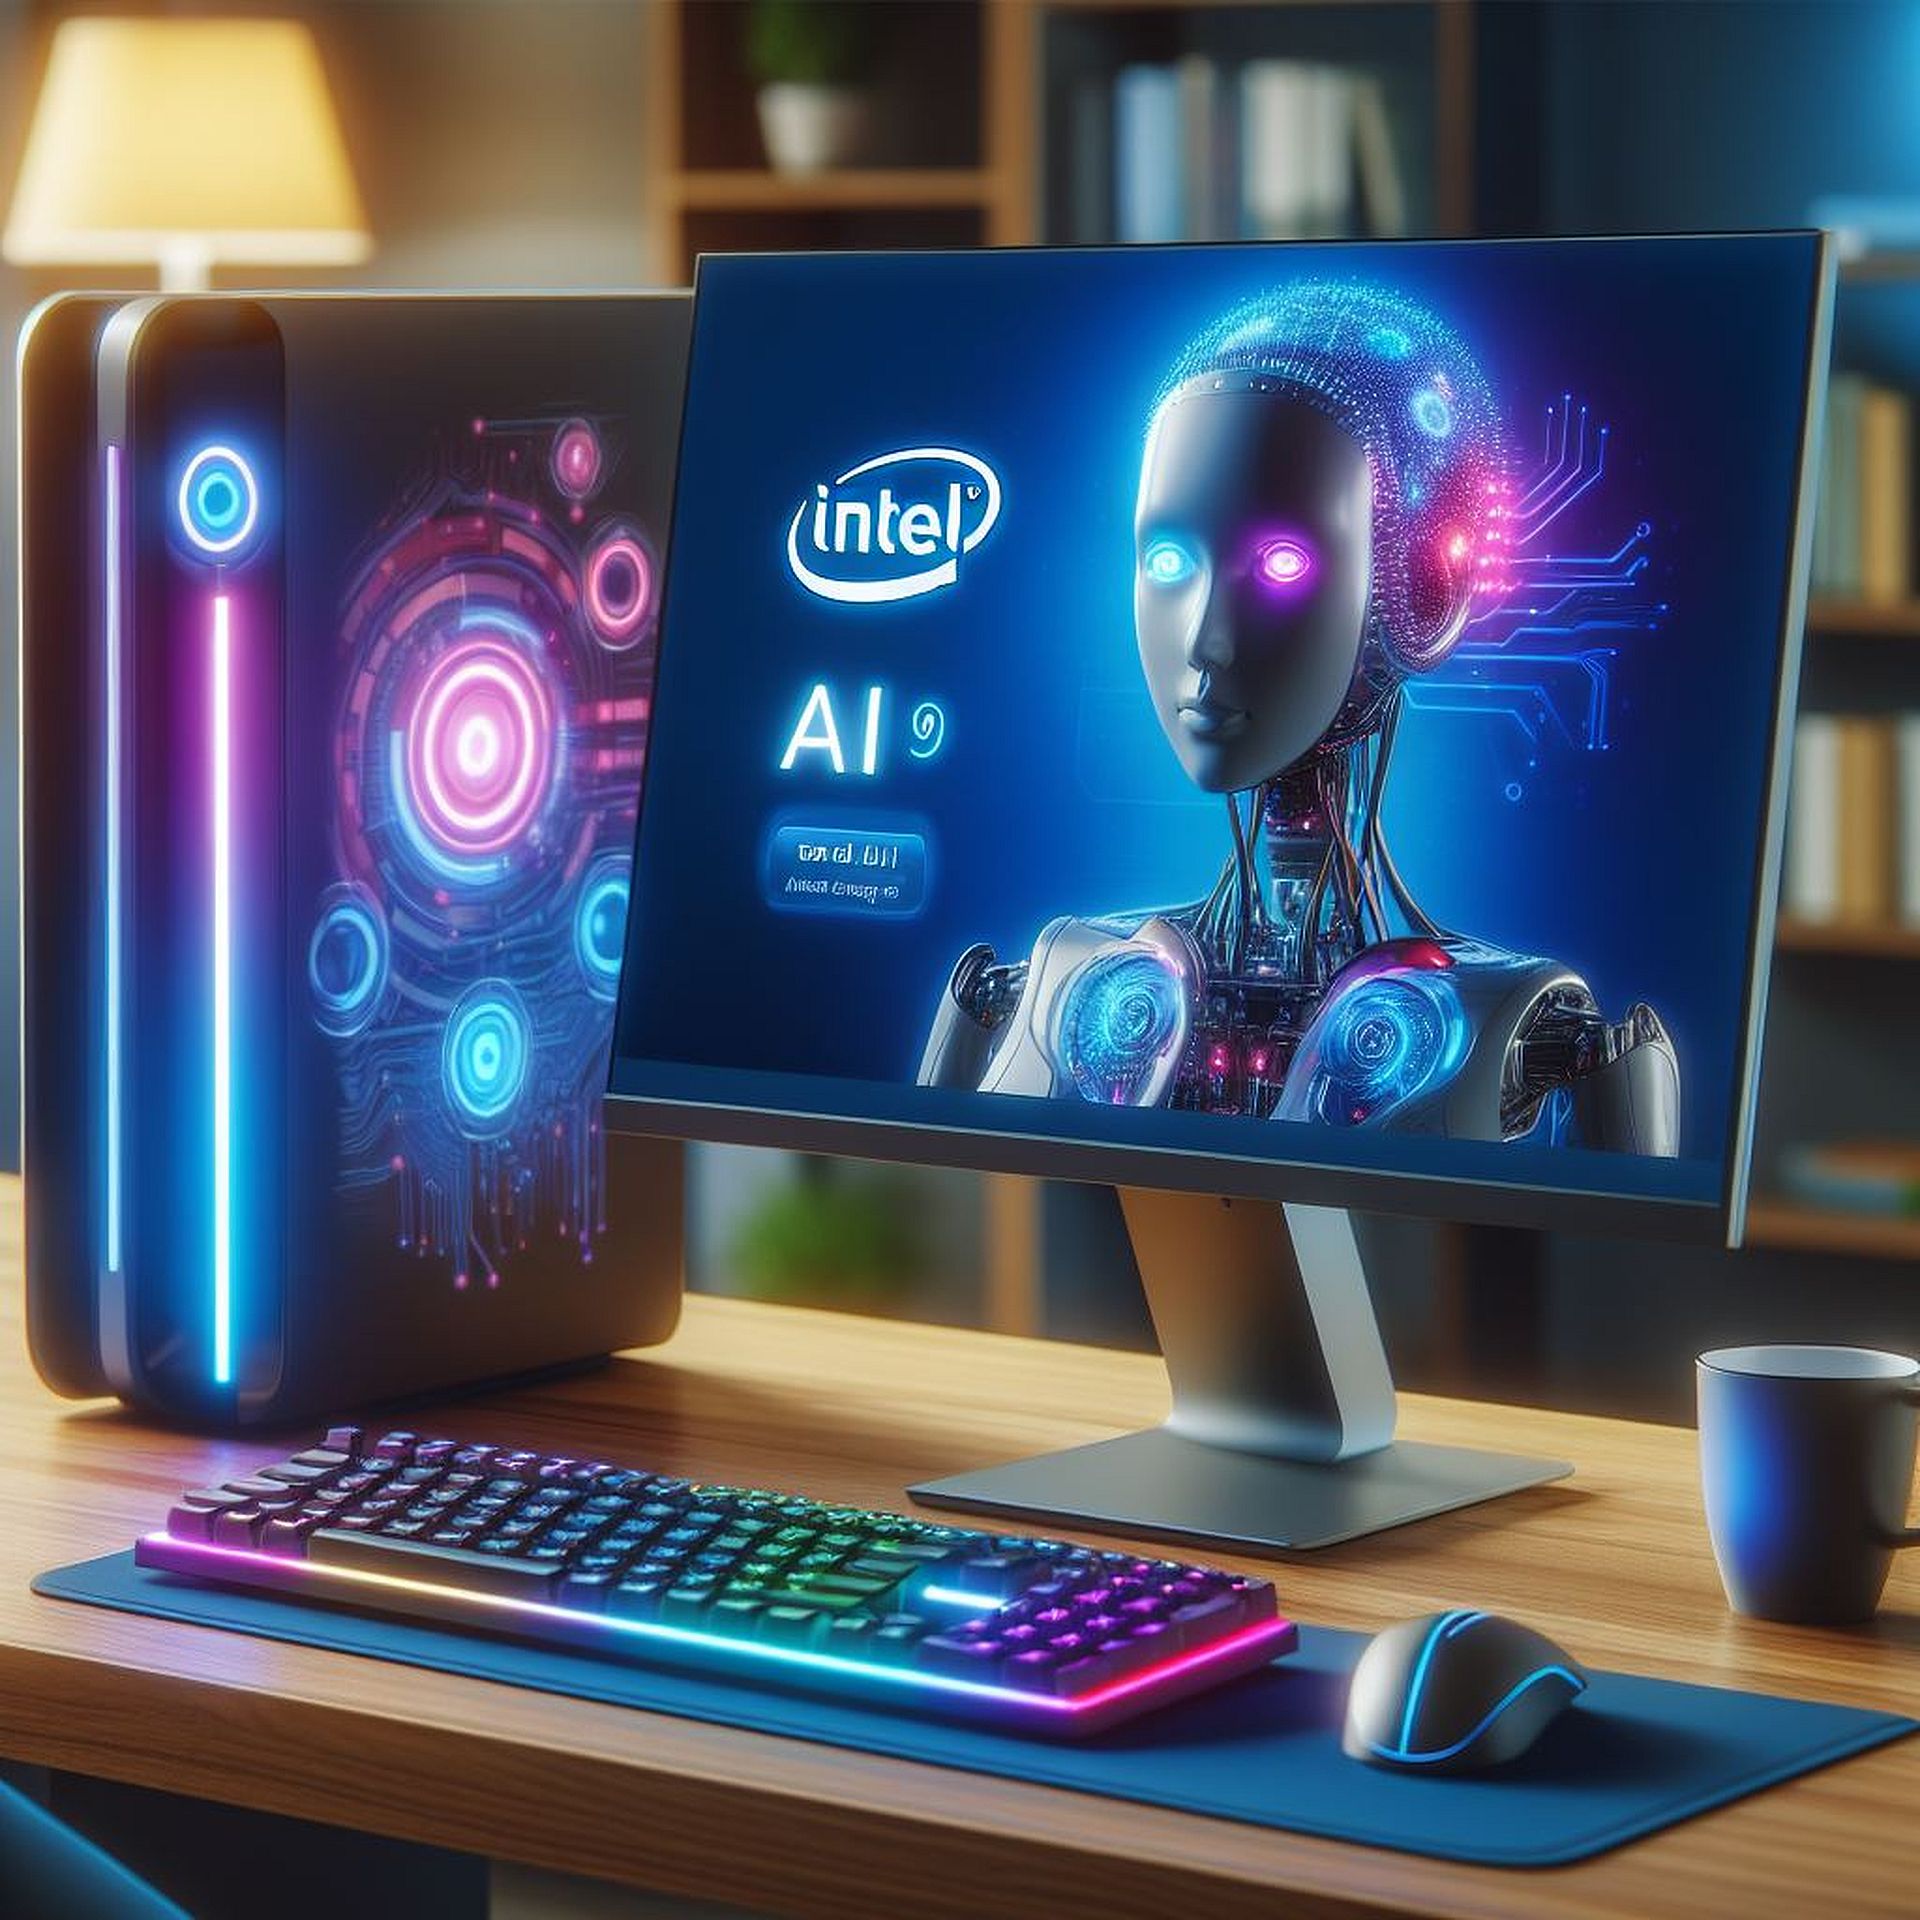 Intel wants your help building AI PCs